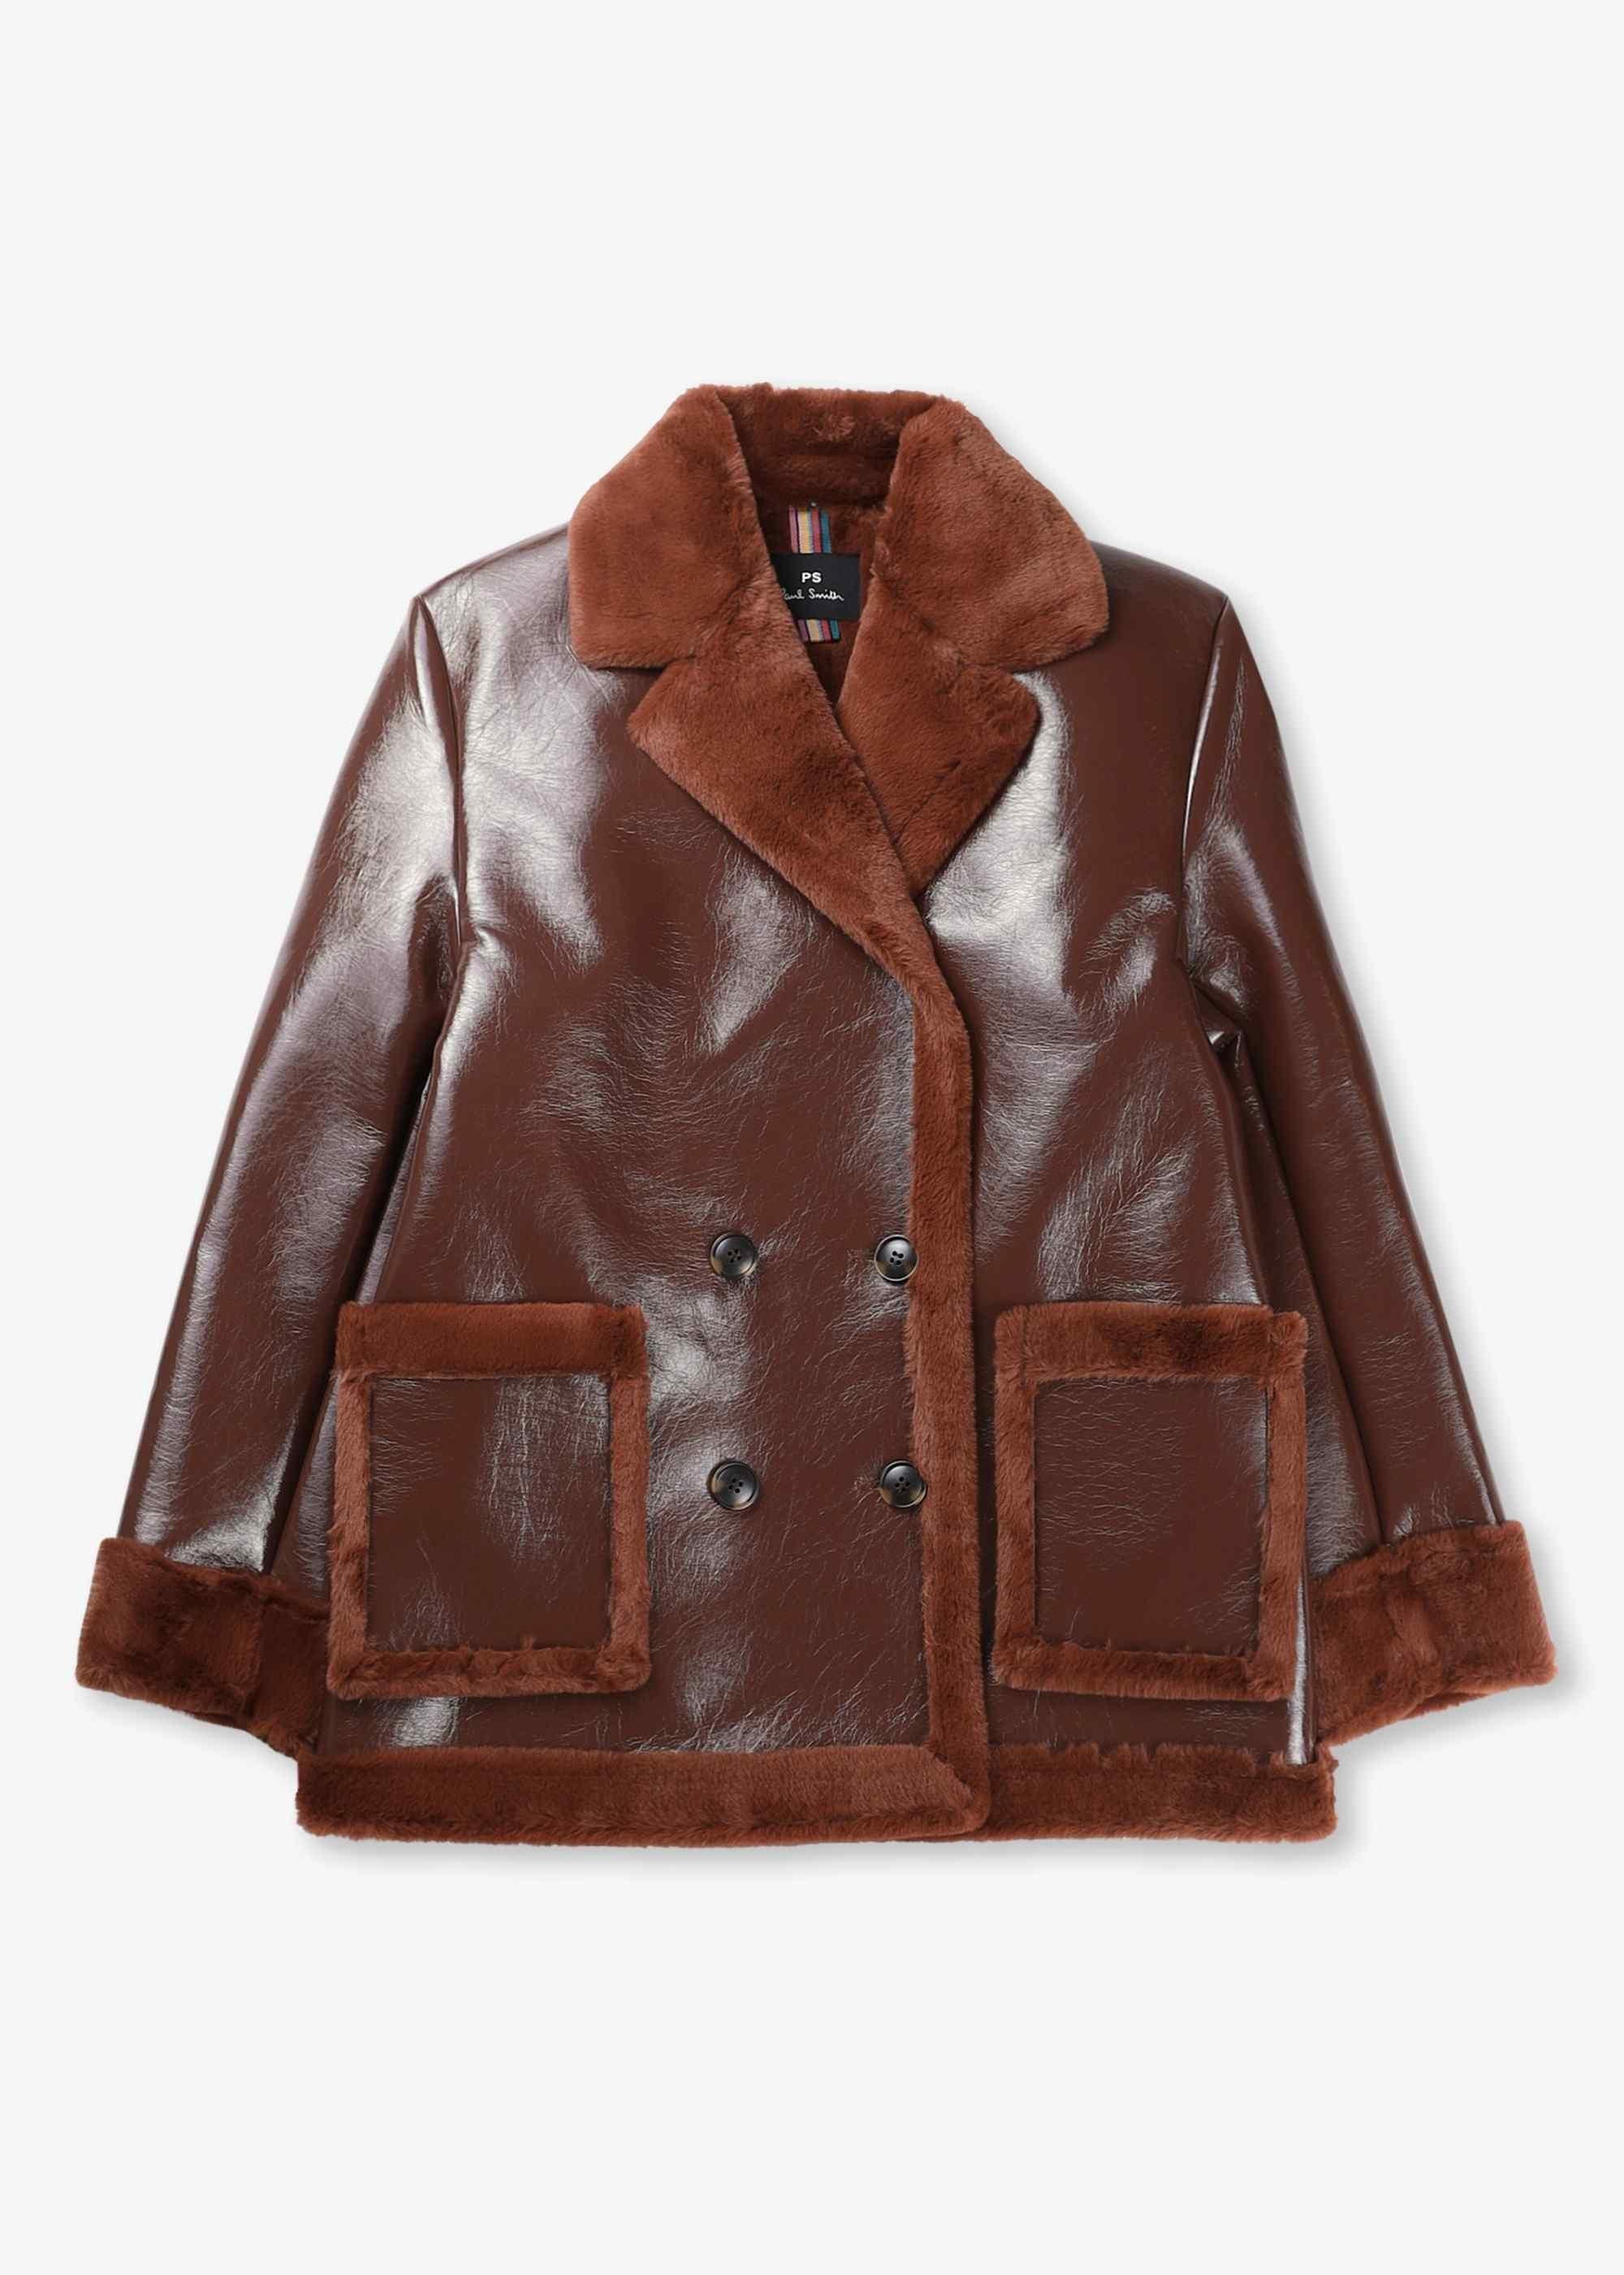 袖丈65cmLewis Leather Paul Smith Double Jacket